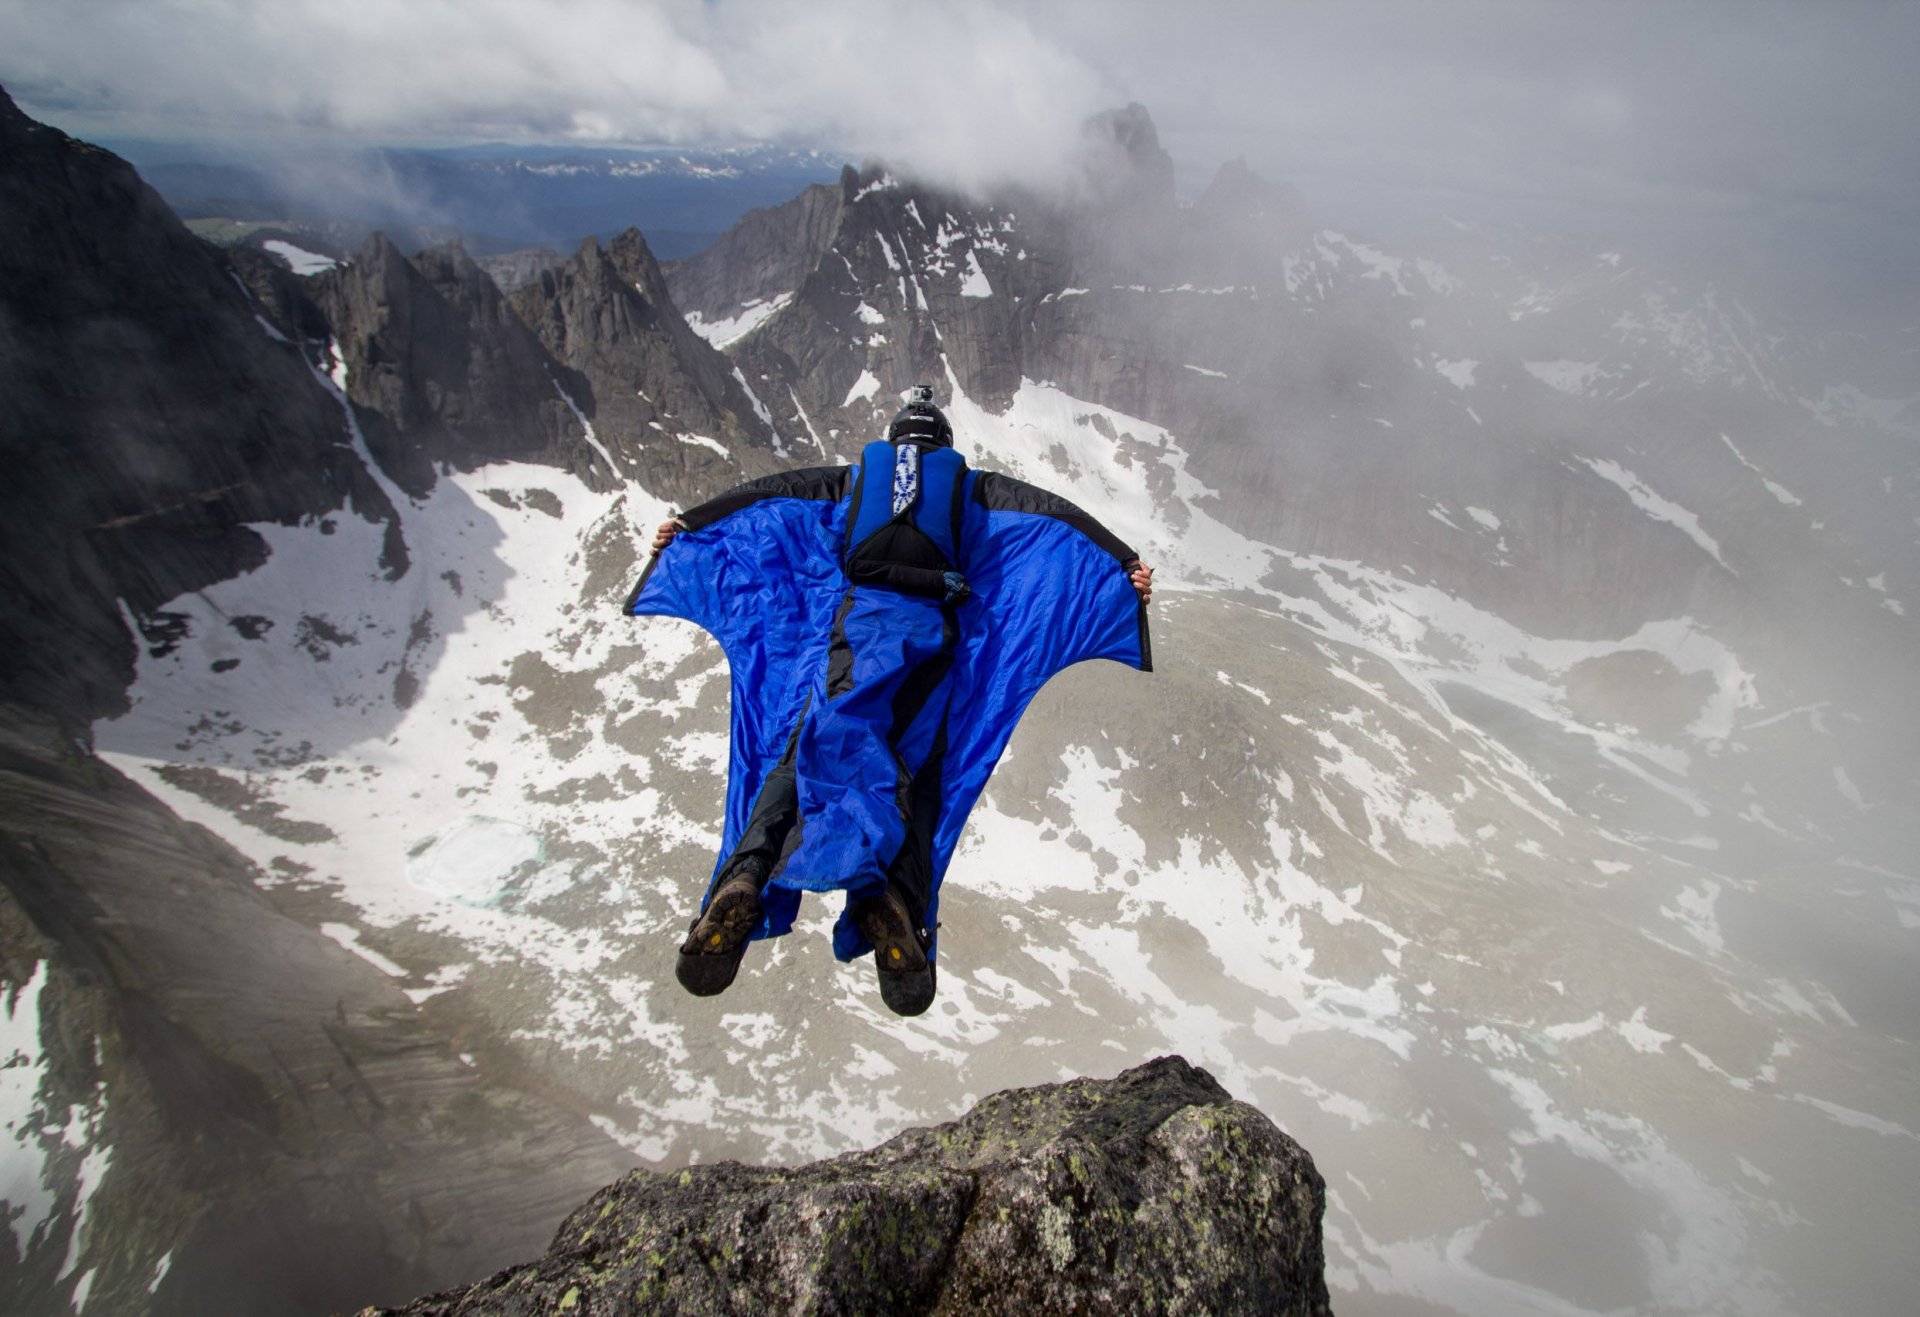 вингсьют пилот бейсджампинг бейсер горы скалы облака контейнер парашют экстремальный спорт